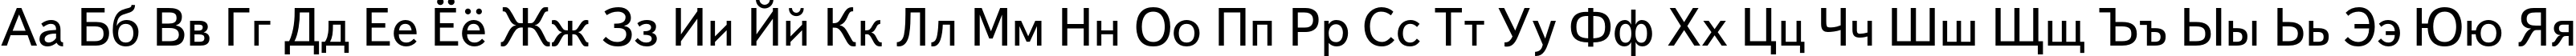 Пример написания русского алфавита шрифтом TextBookC